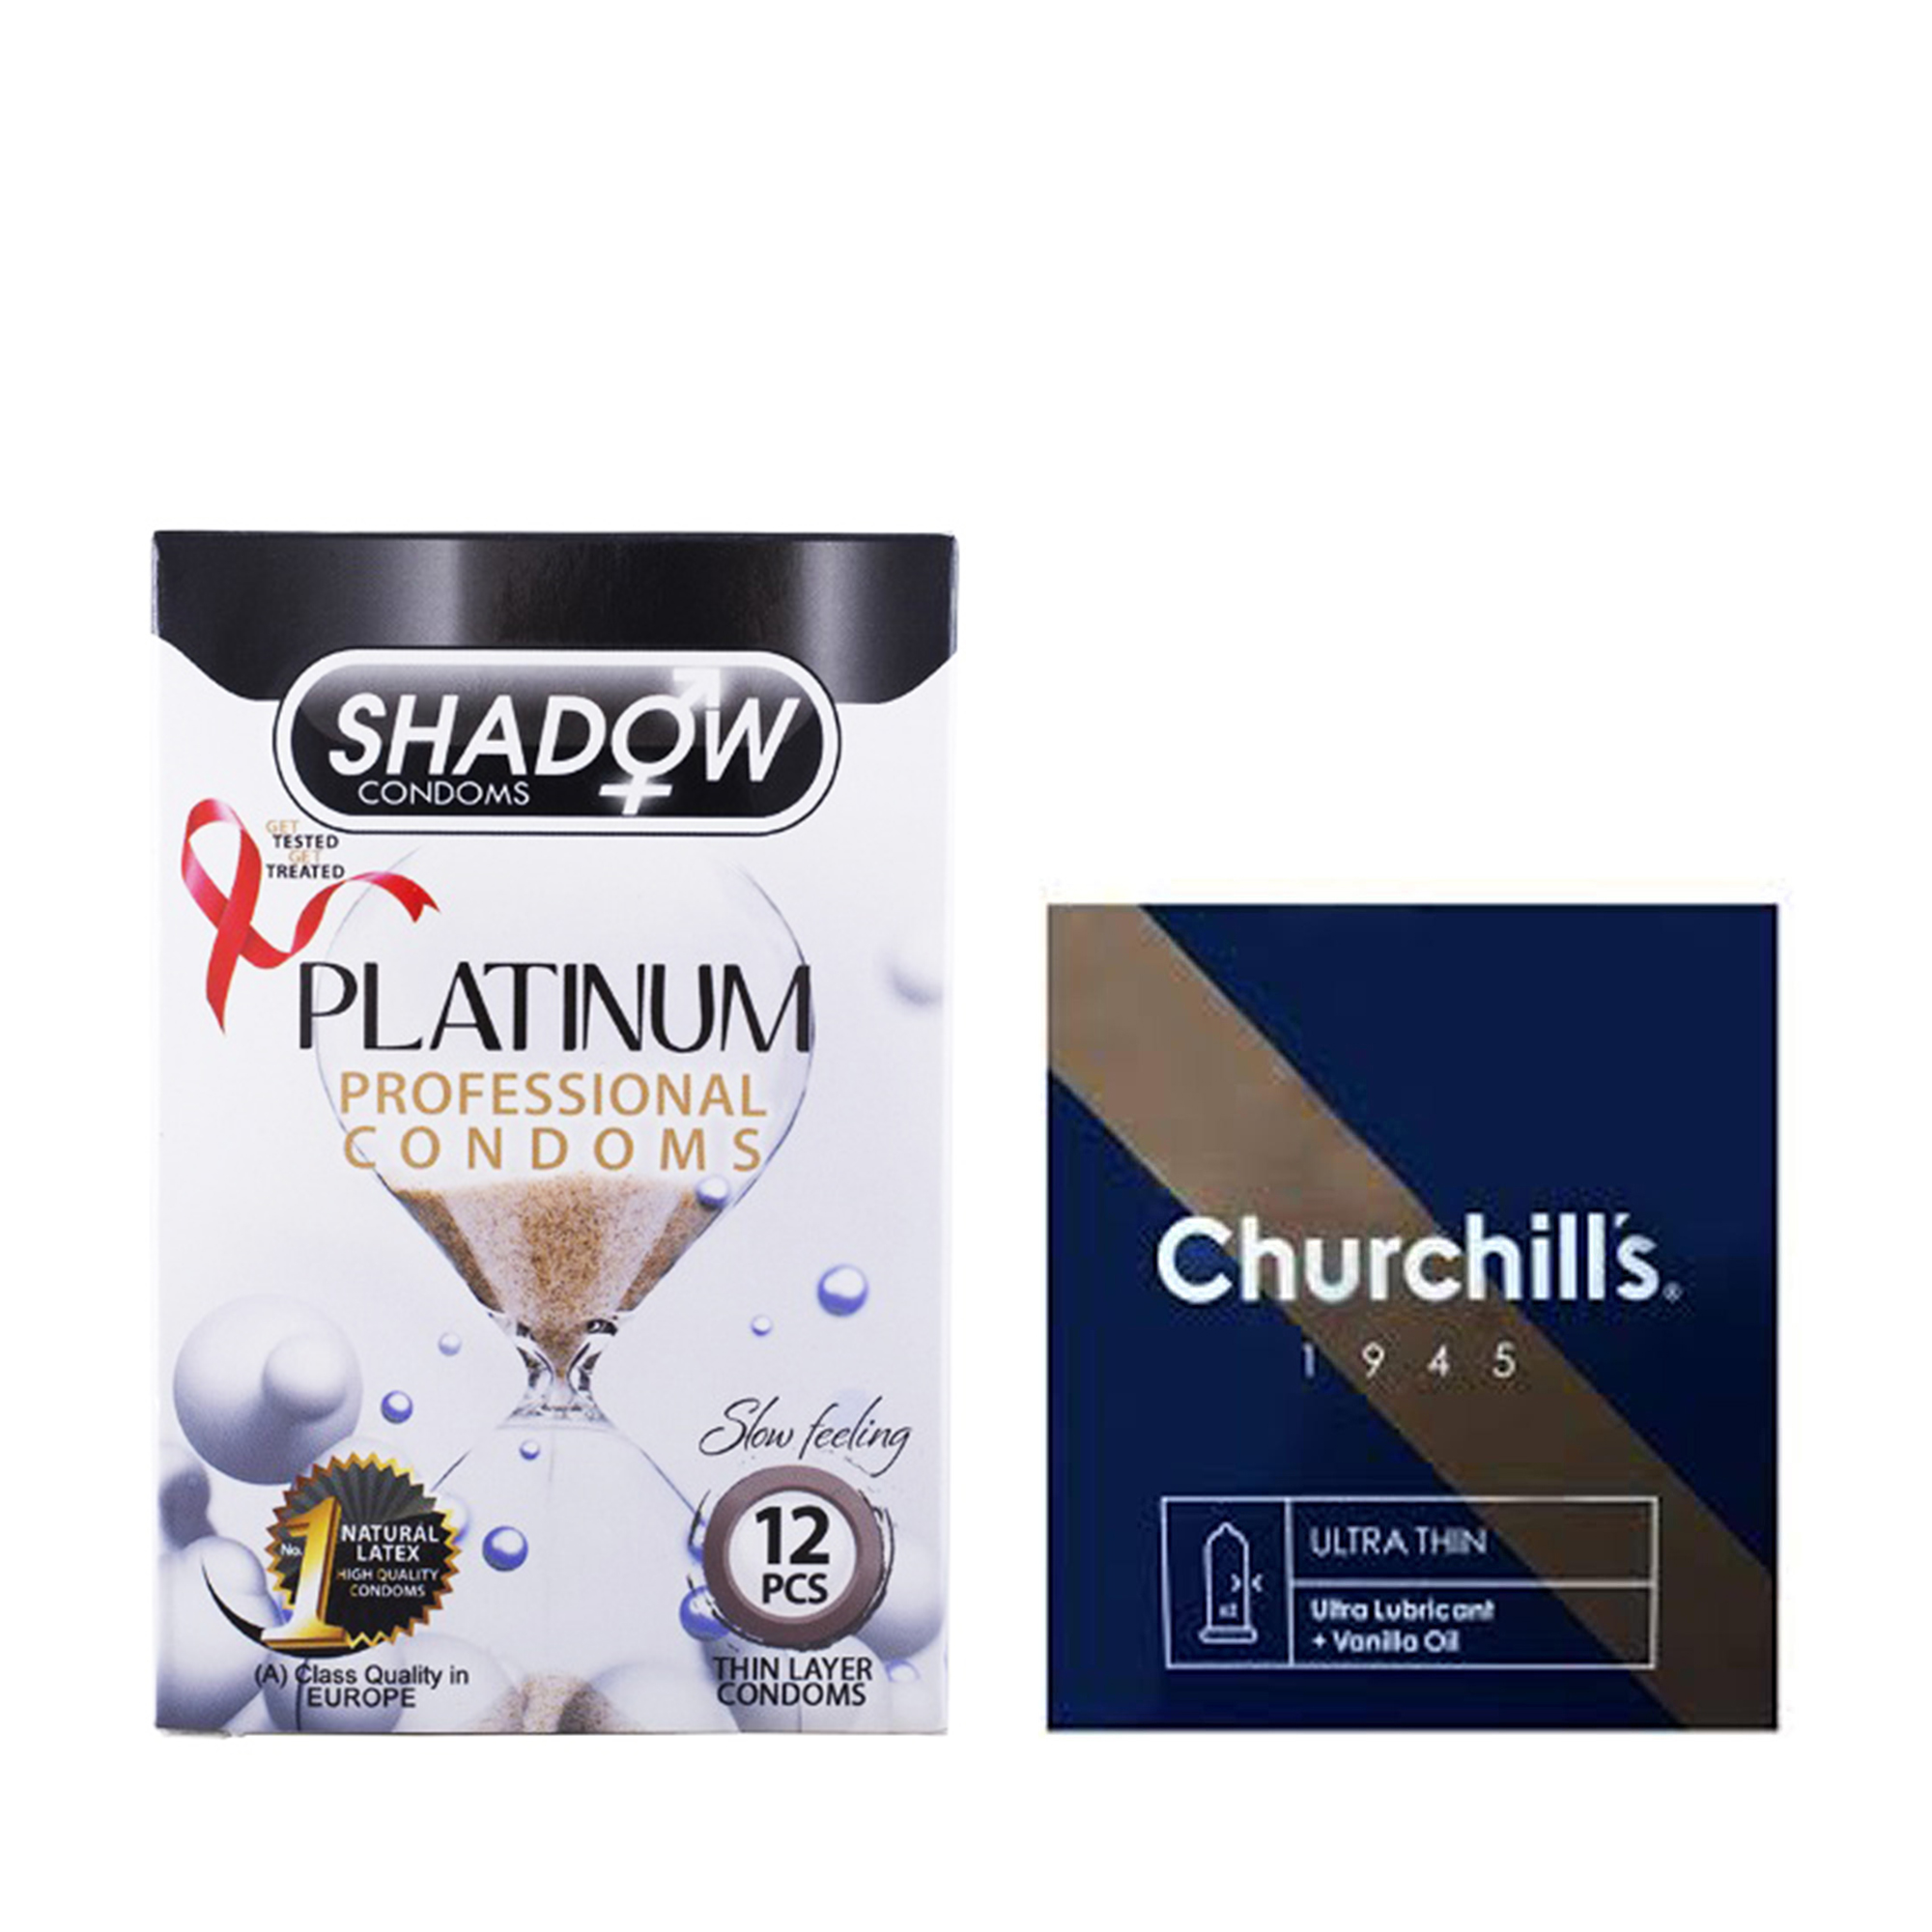 کاندوم چرچیلز مدل Ultra Thin بسته 3 عددی به همراه کاندوم شادو مدل Platinum بسته 12 عددی